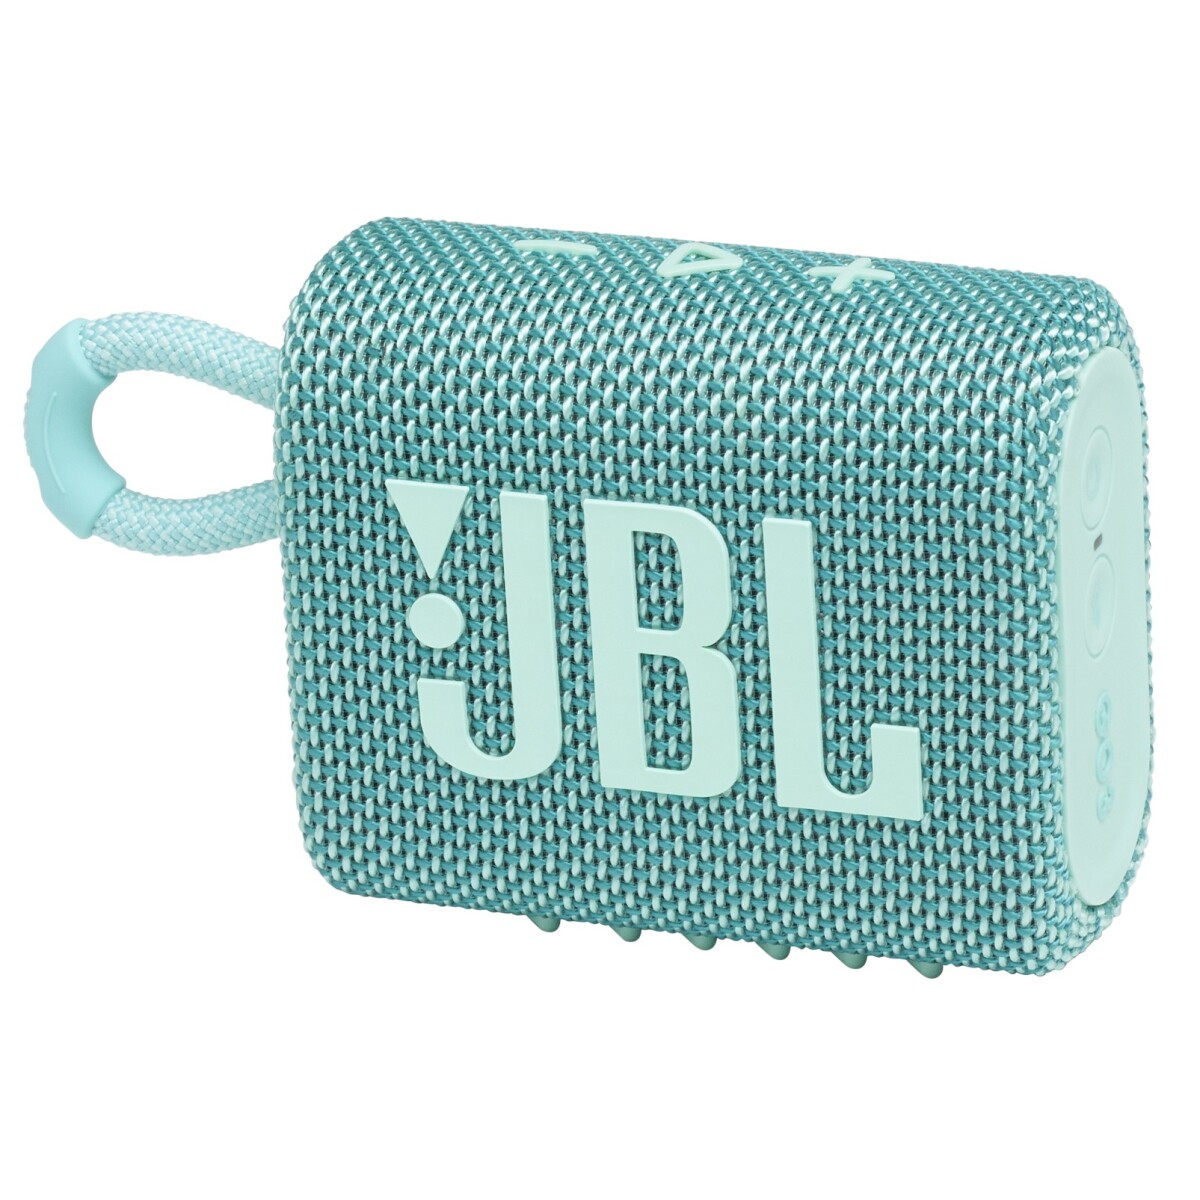 JBL GO 3 PORTABLE BLUETHOOTH SPEAKER,5 HOURS BATTERY & WATERPROOF (TEAL) - 001 